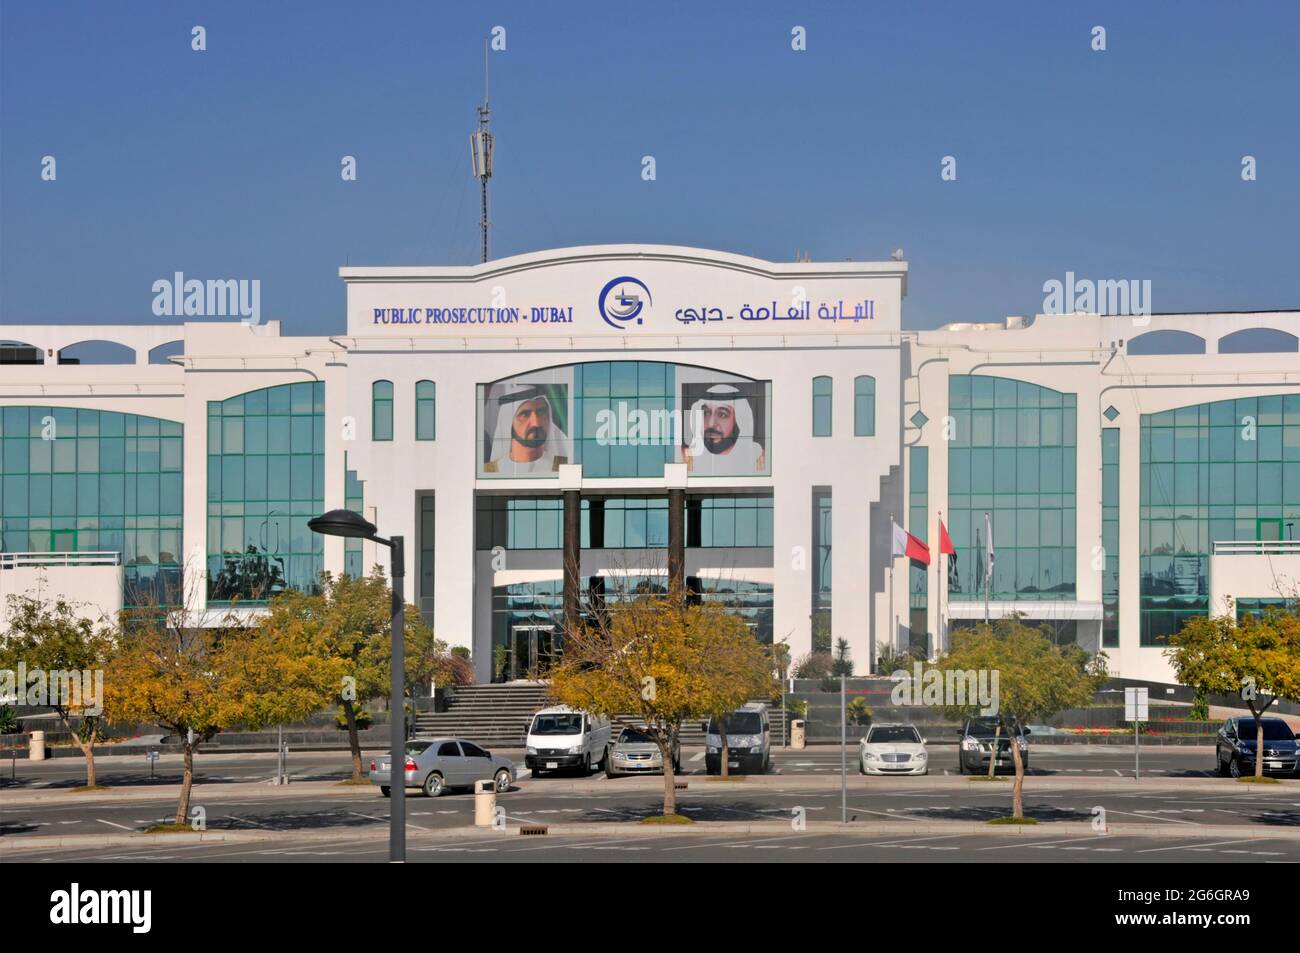 Letreros bilingües sobre la fachada frontal y la entrada del Ministerio Público de Dubai Edificio de la fiscalía masculina retratos y cielo azul Emiratos Árabes Unidos Emiratos Árabes Unidos Foto de stock